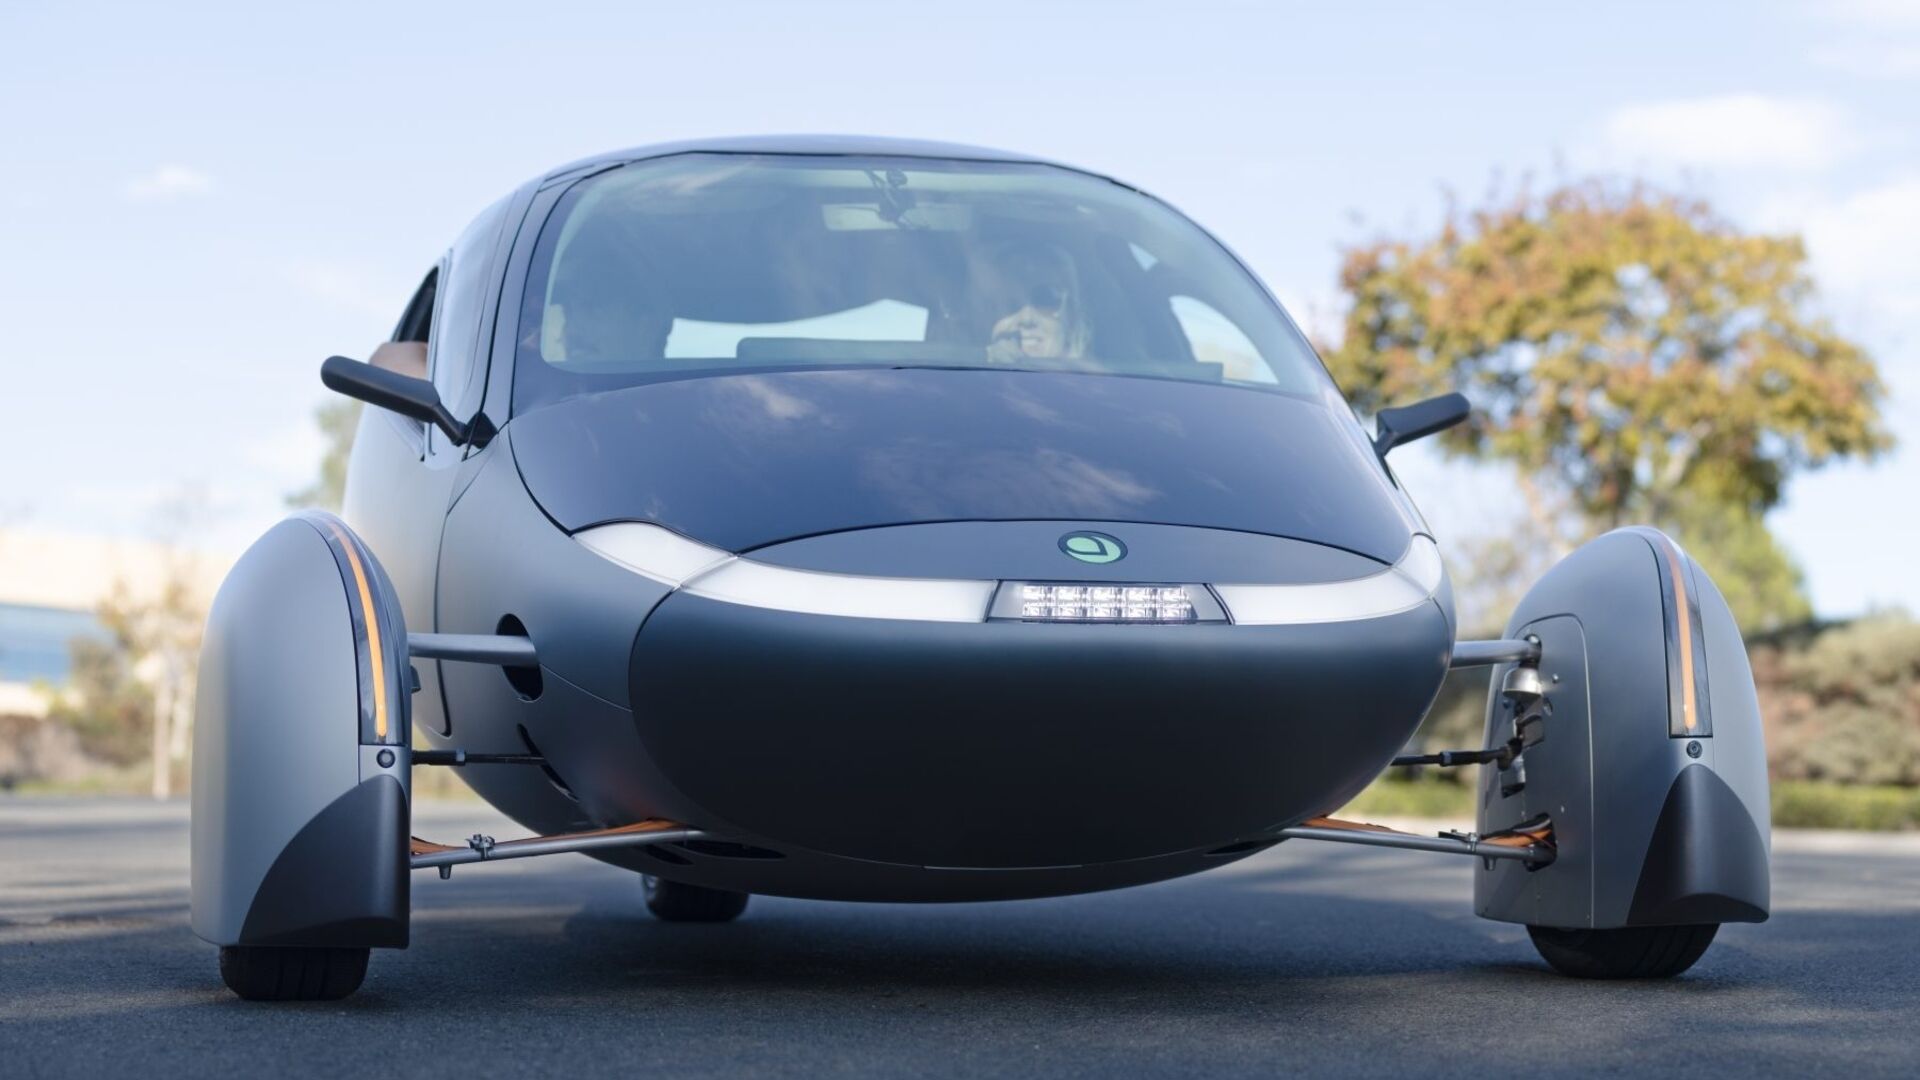 Aurinkoauto: Aptera Delta on maailman kestävin auto, jonka toimintasäde on 1600 km akkuvirralla ja 70 km aurinkoenergialla